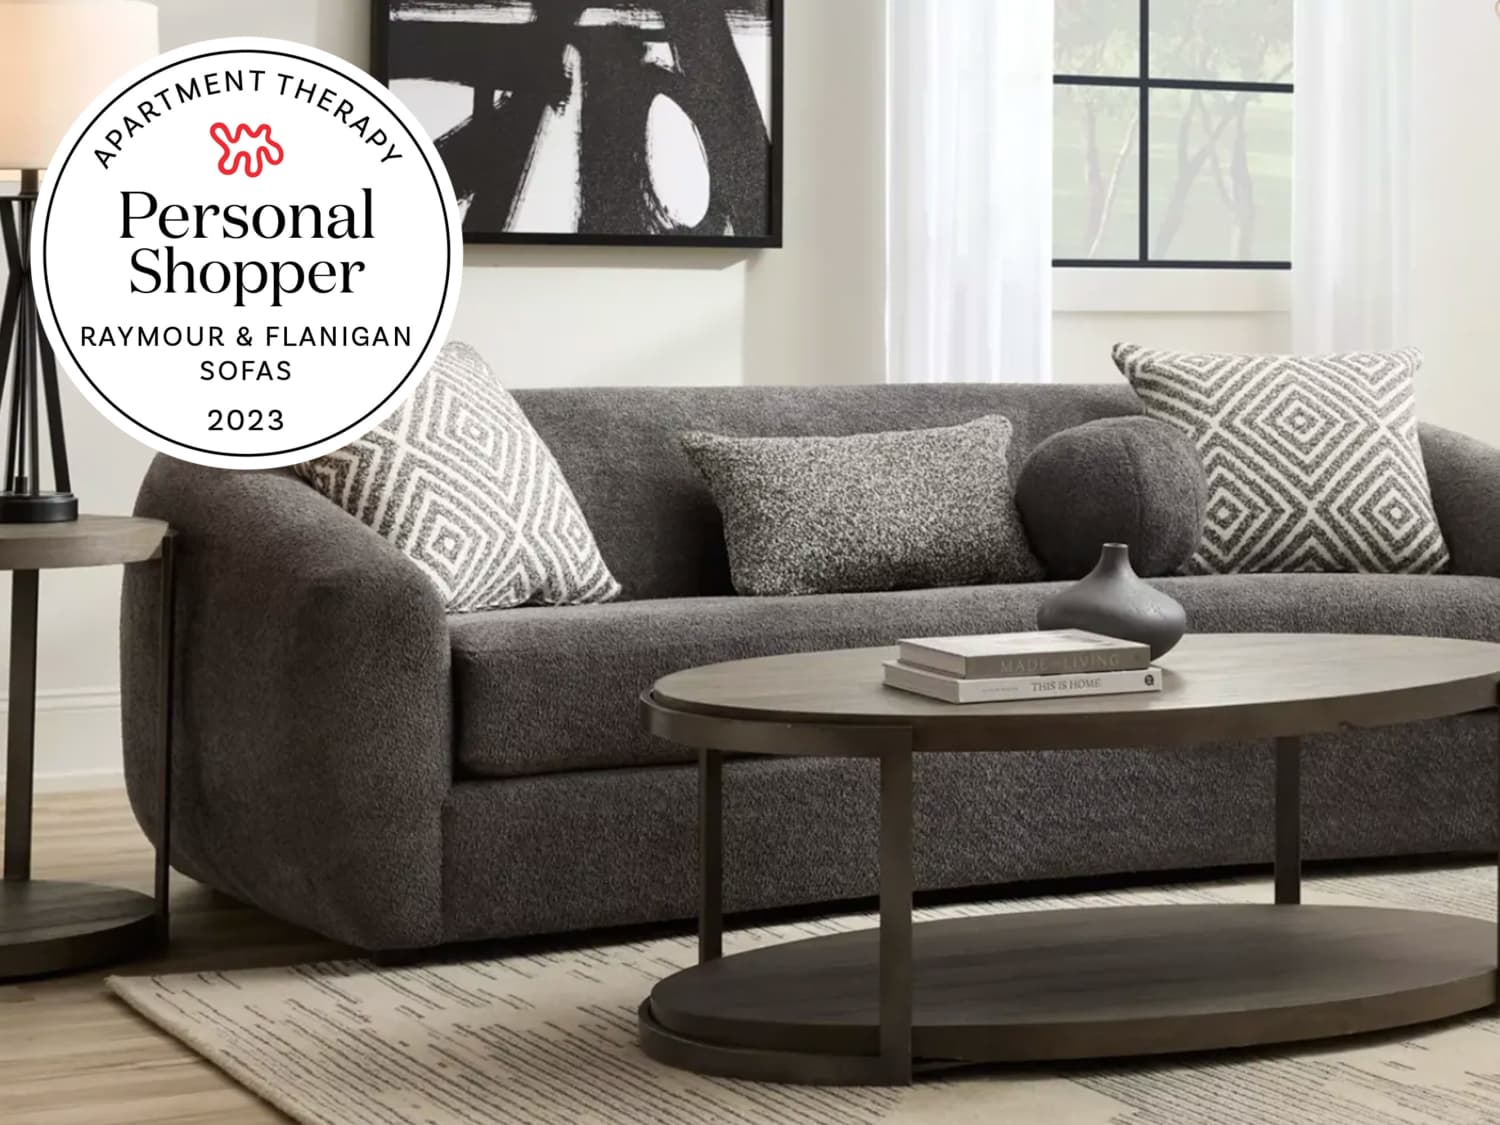 TWAB Furniture Savers Save Sagging Sofa Chair fix Couch Cushion